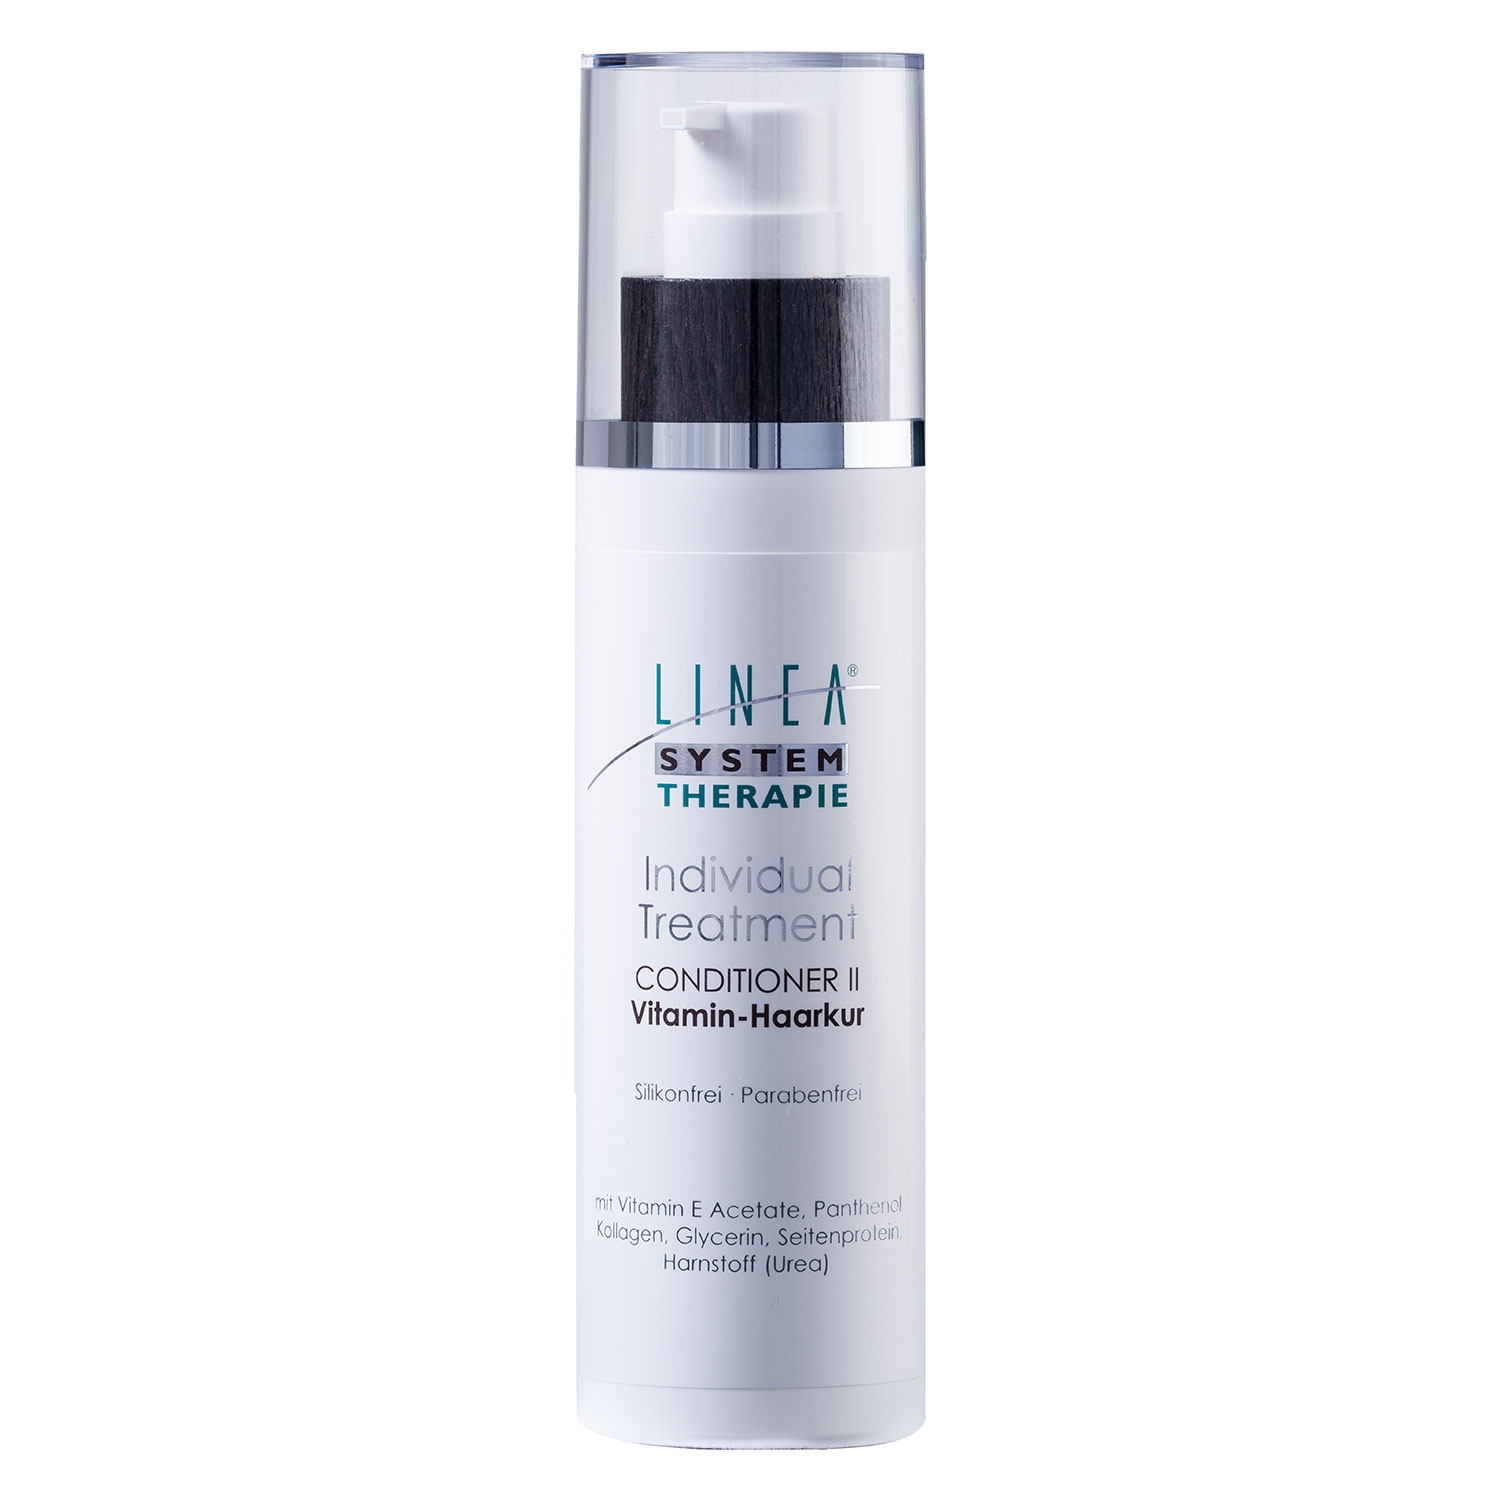 Produktbild von Linea - Vitamin Haarkur Conditioner 2